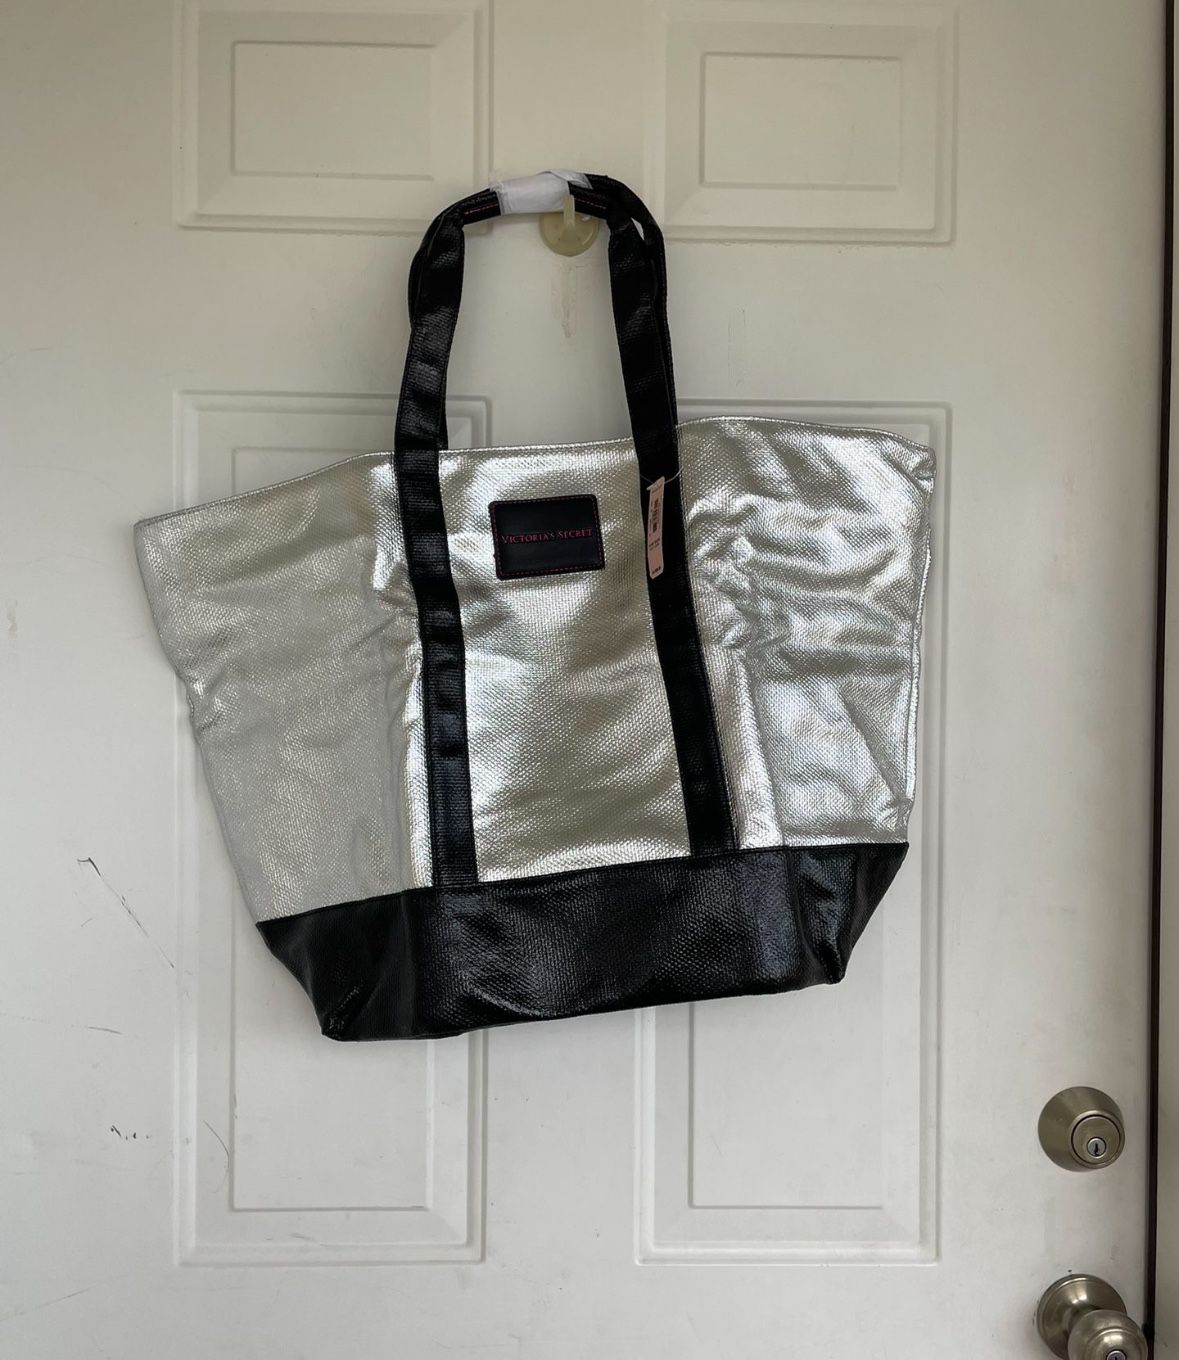 BRAND NEW Victoria's Secret Large Tote/Gym Bag/Weekender Bag